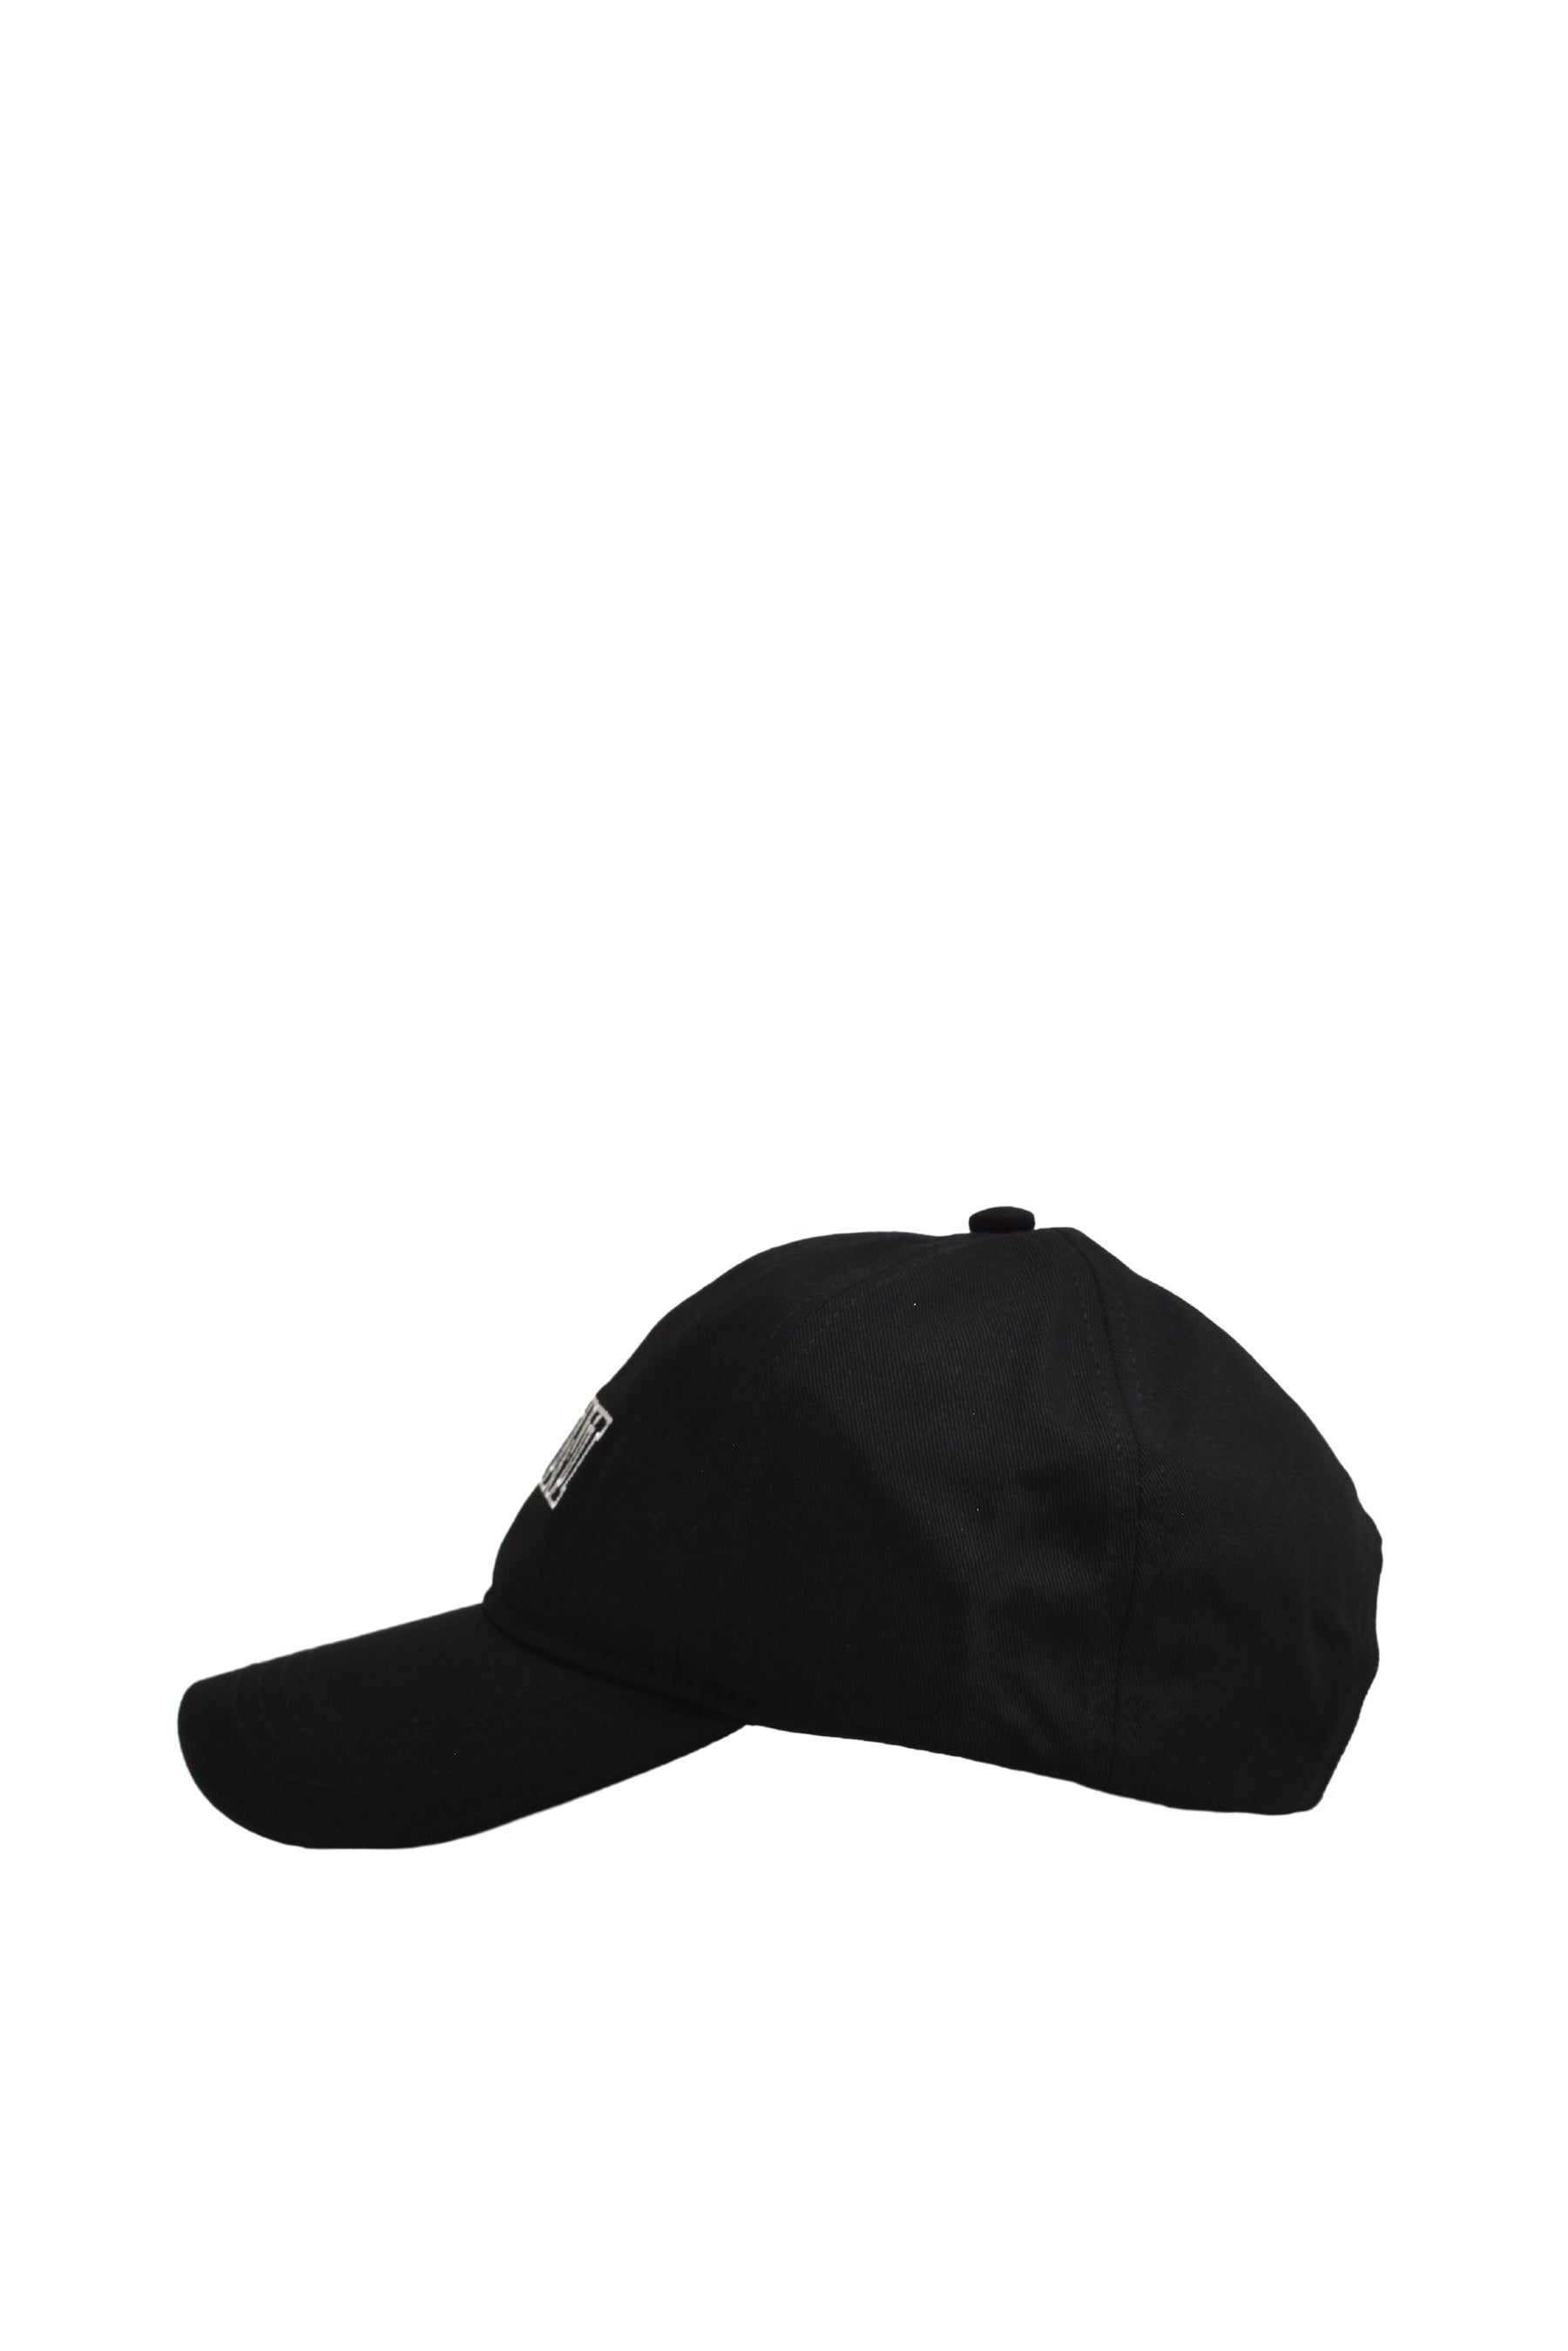 CAP HAT / BLK